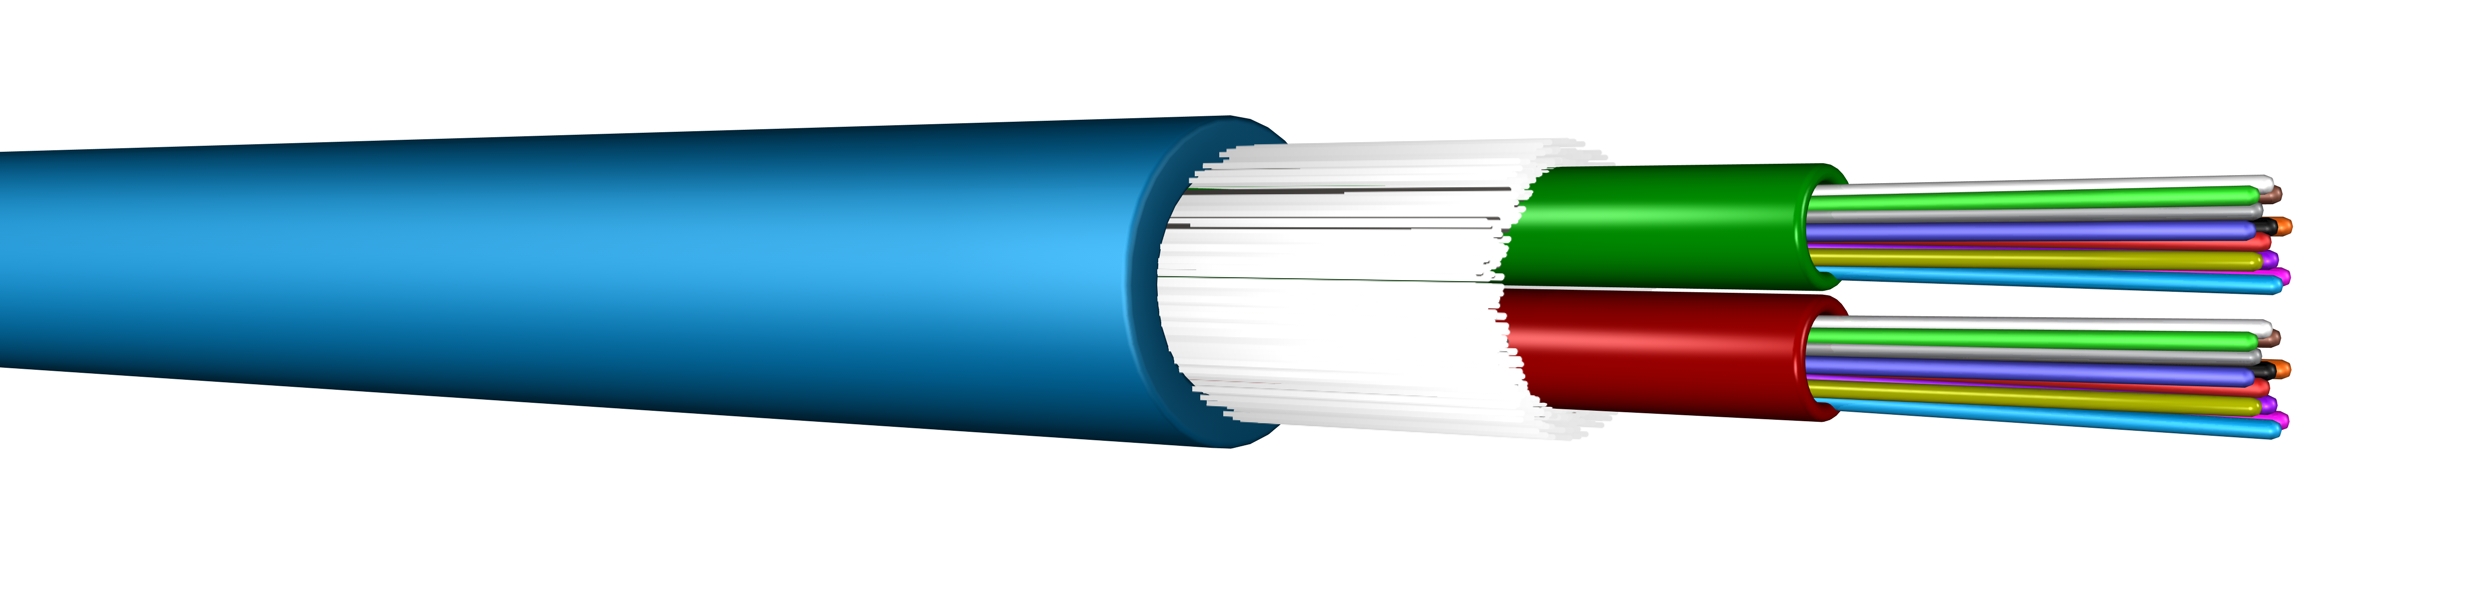 E18: UCFIBRE™ Universal Bi-Tube Cable